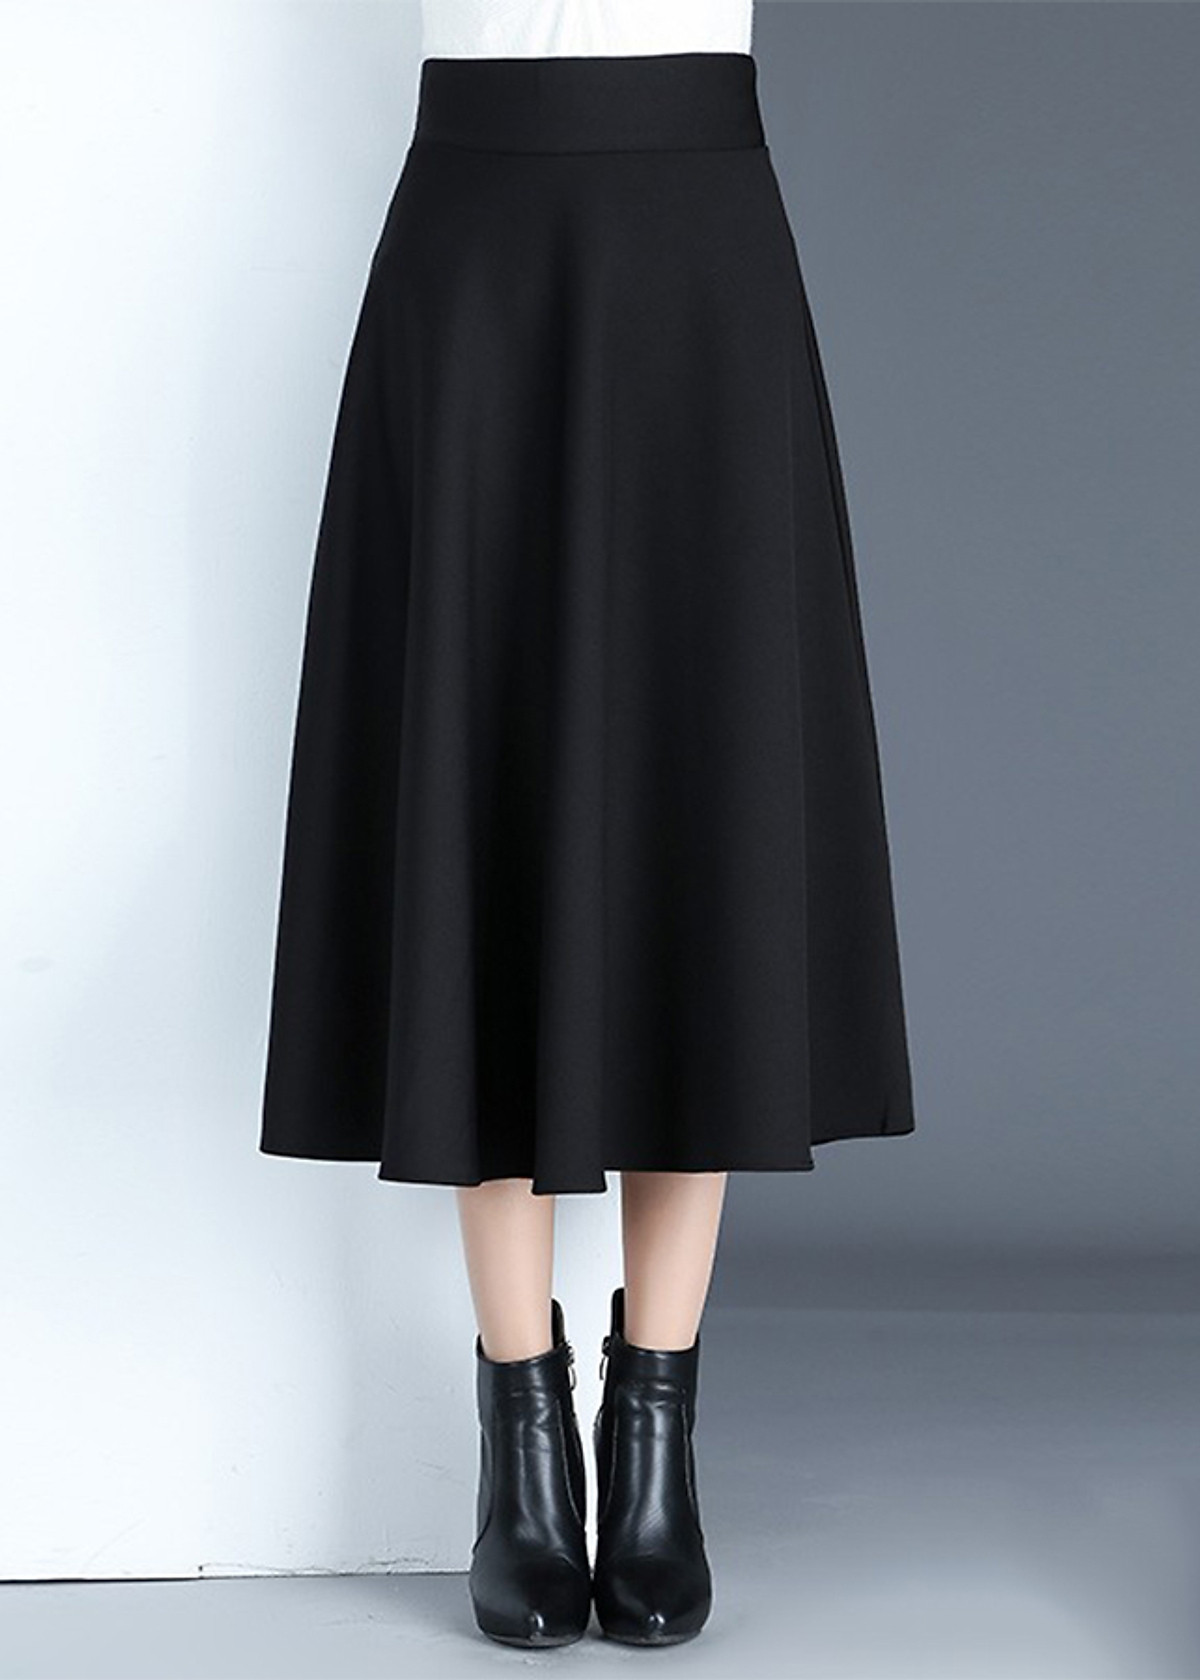 Chân váy dài 3 lớp lưới ren màu đen  Chân Váy Lưới Dài  Facebook